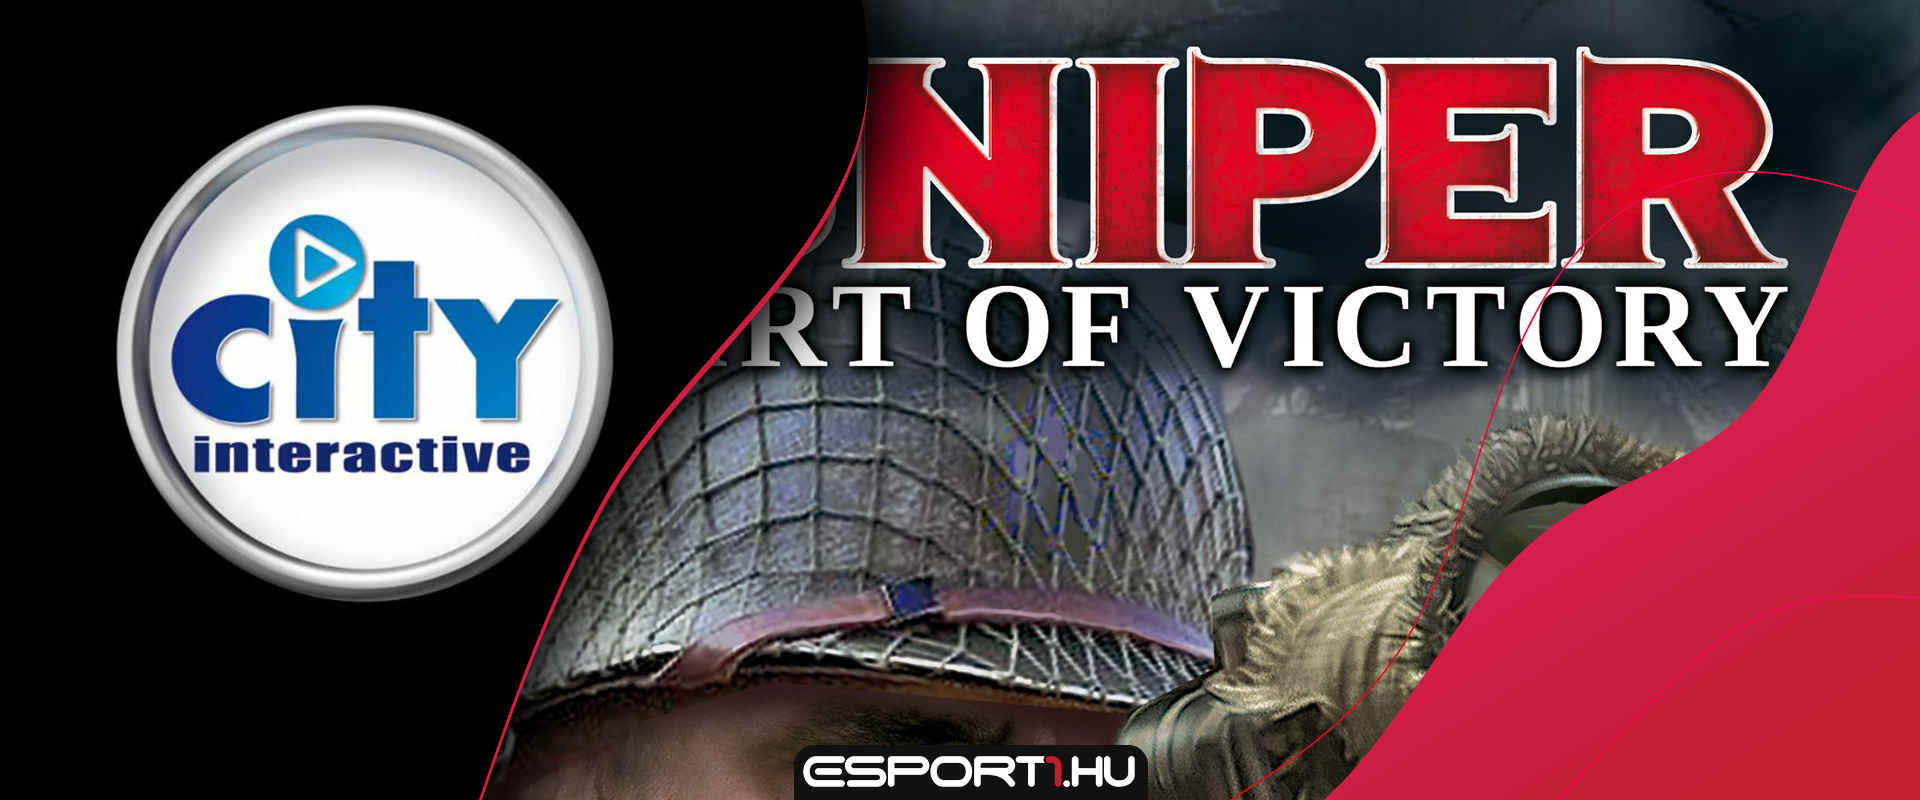 Szinte ingyen húzhatjátok be a City Interactive legendás Sniper játékait!